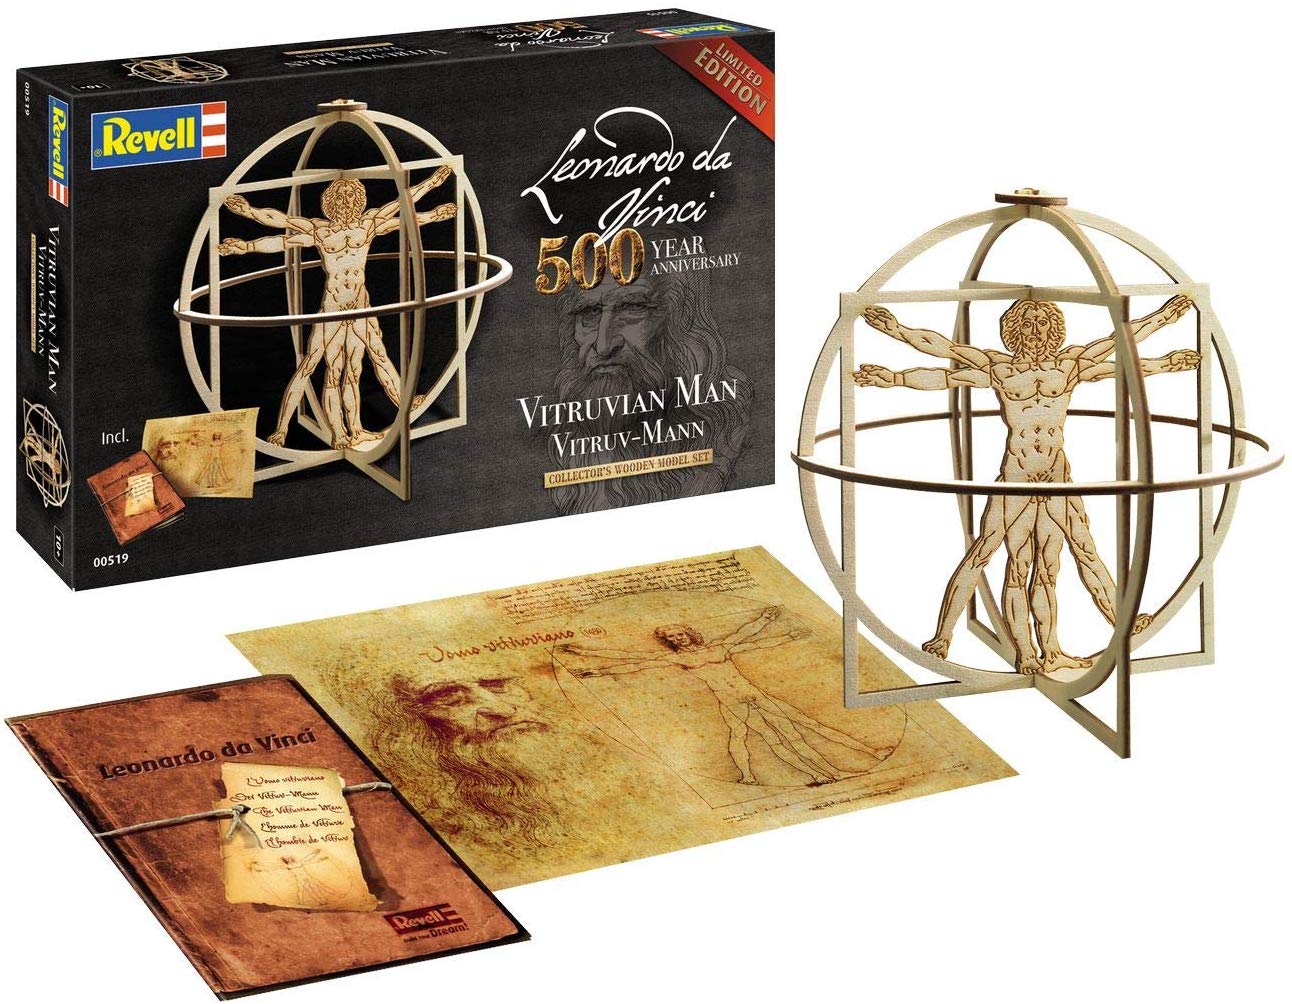 Leonardo Da Vinci - Vitruvian Man Limited Edition 500 Year Anniv. 29 cm